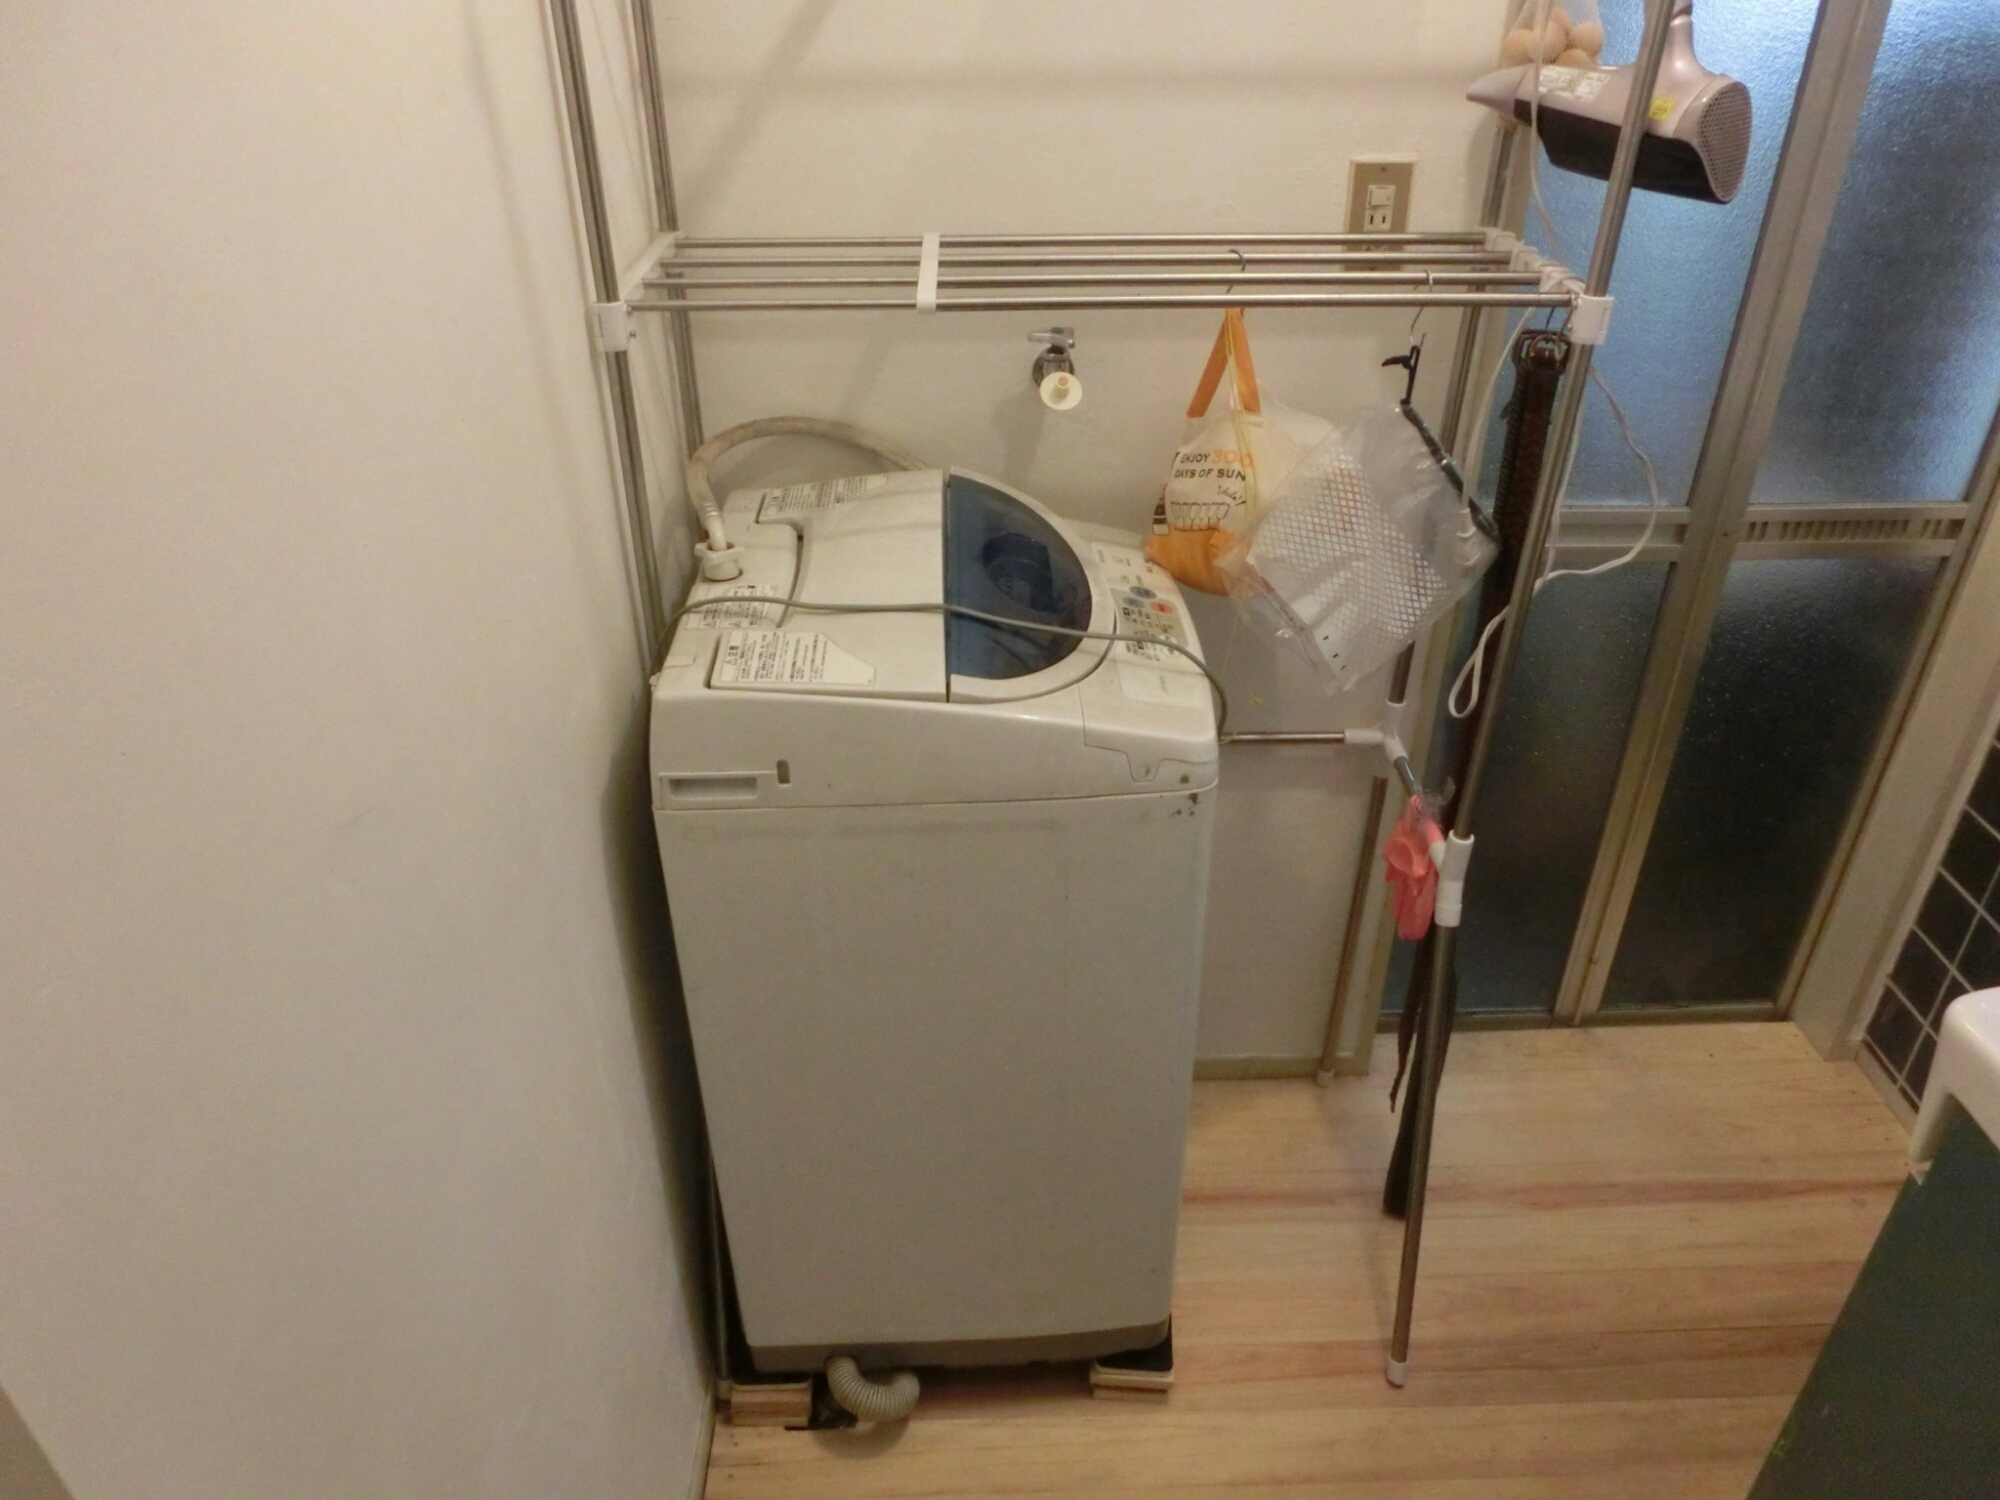 生活家電 洗濯機 ドラム式洗濯機(NA-VX7500)が特価で買えました。 | 30代 農家を目指す 